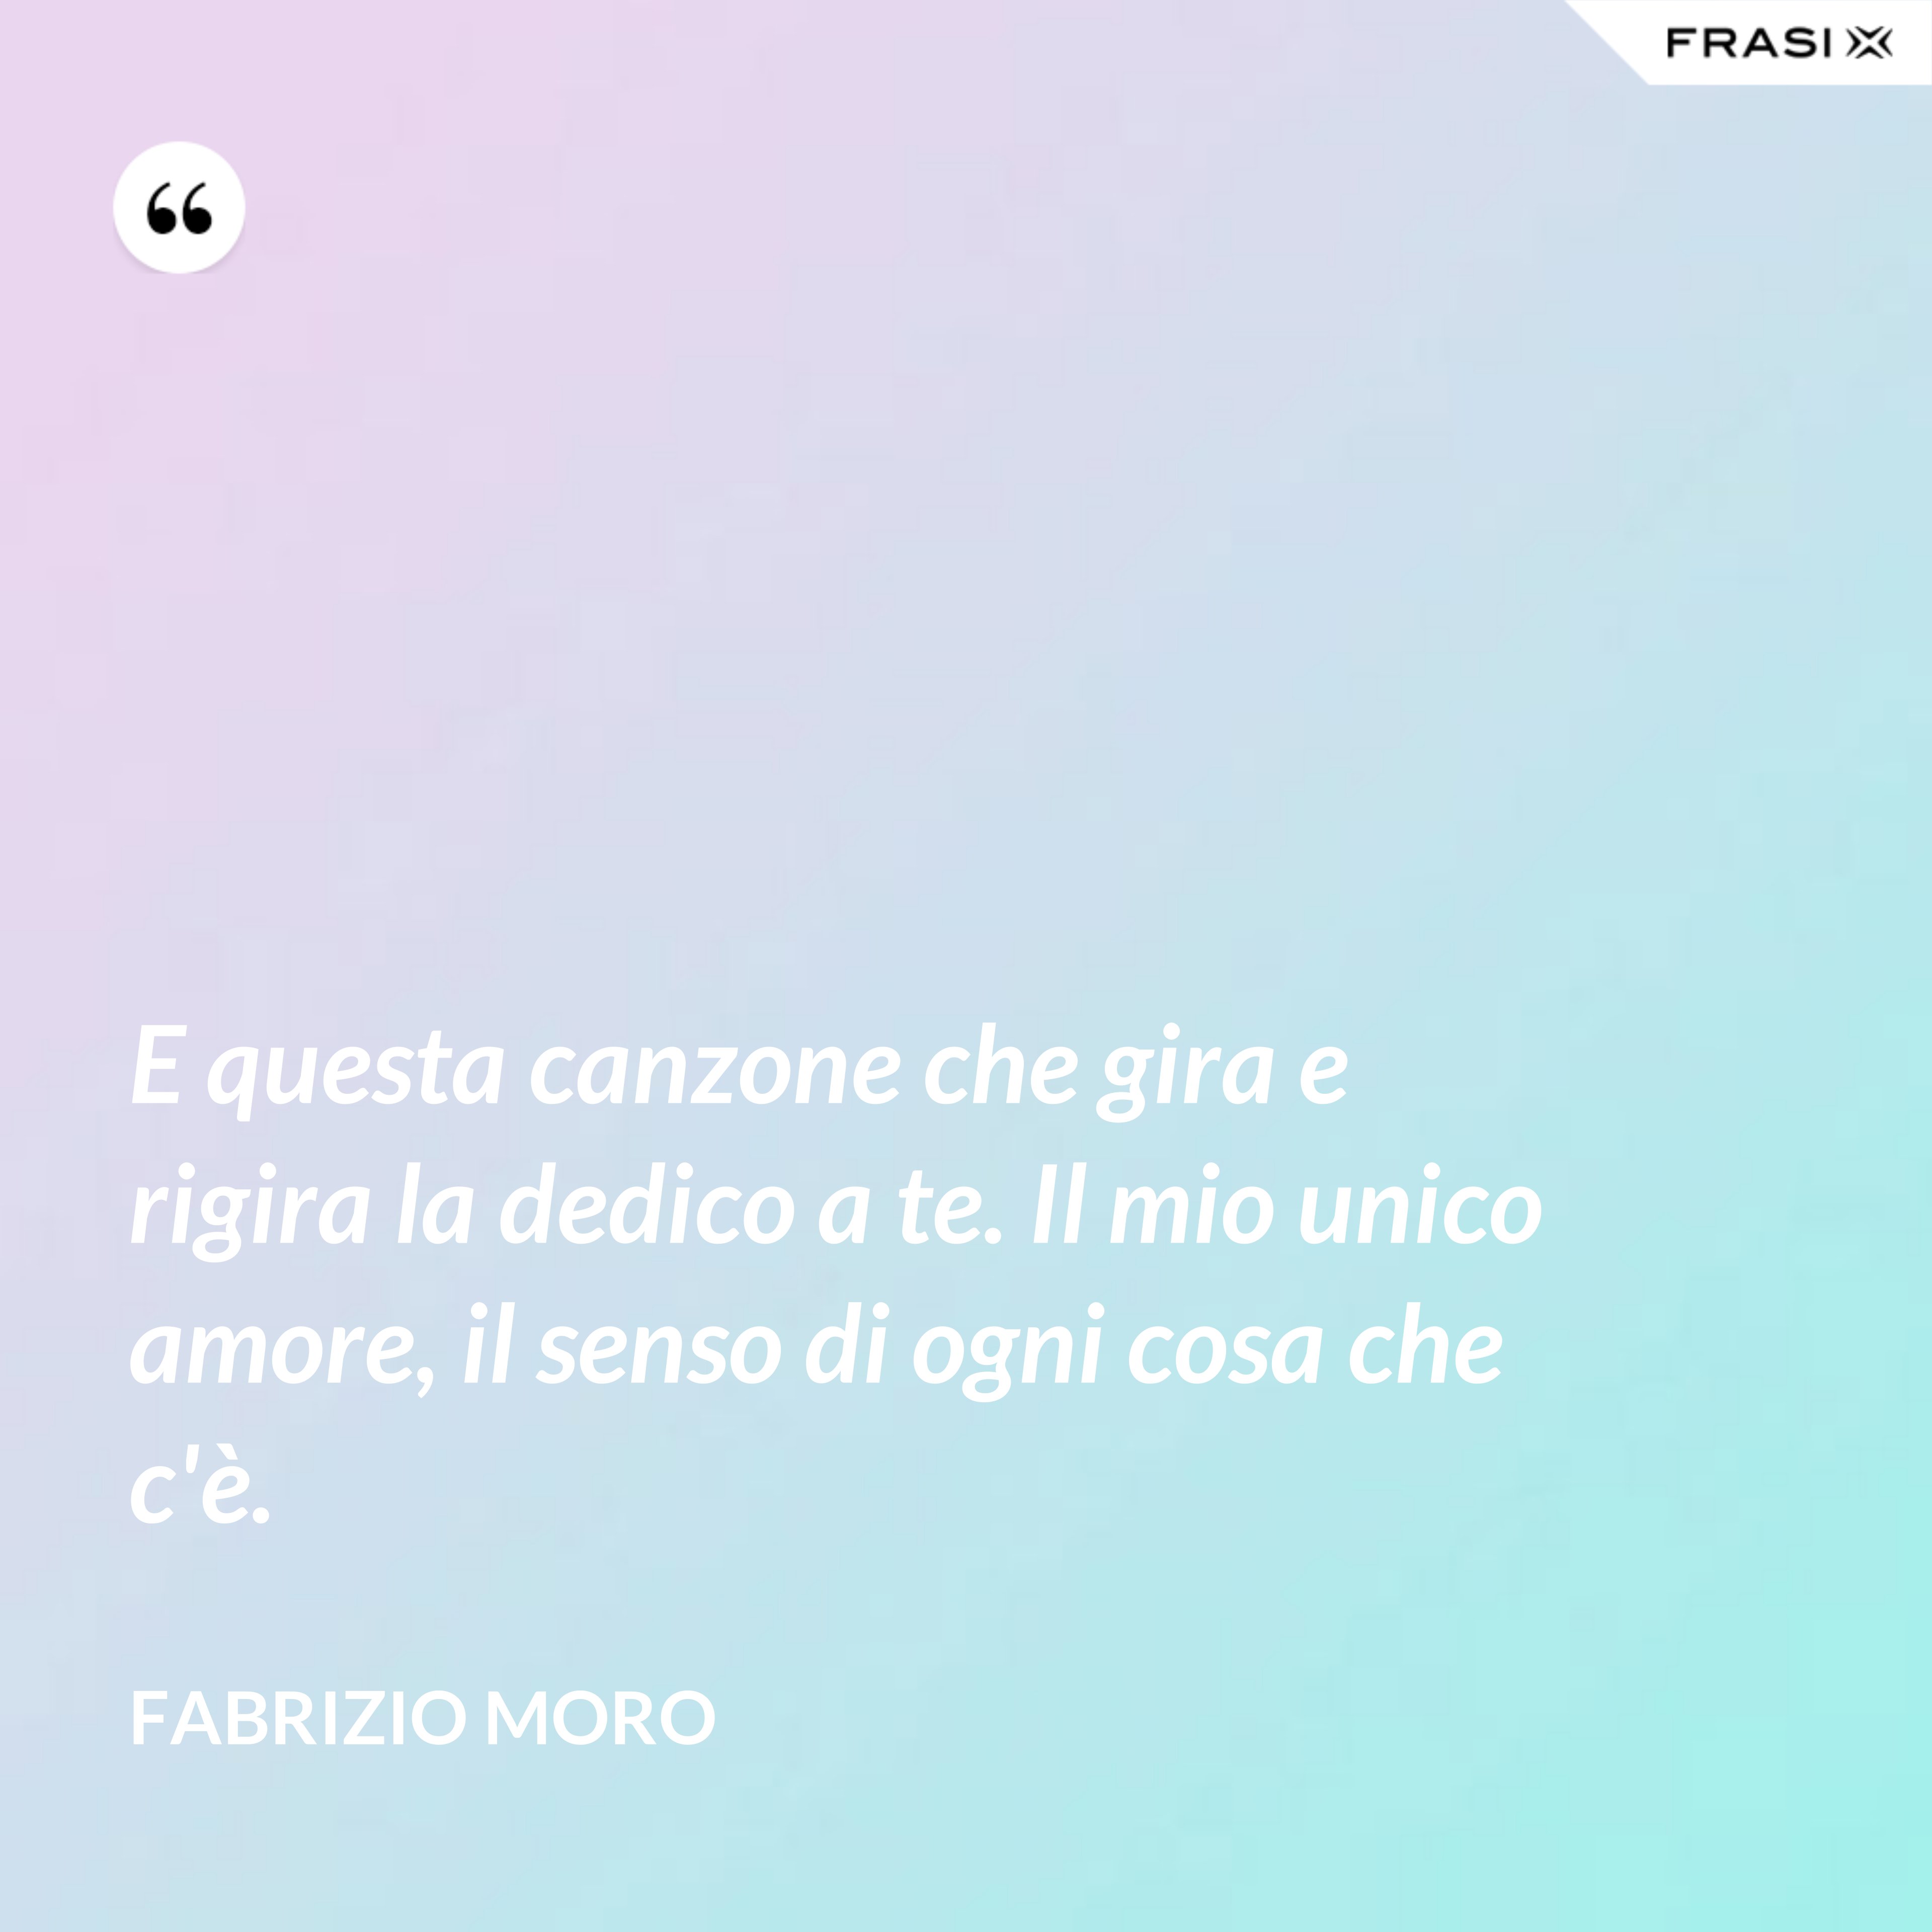 E questa canzone che gira e rigira la dedico a te. Il mio unico amore, il senso di ogni cosa che c'è. - Fabrizio Moro